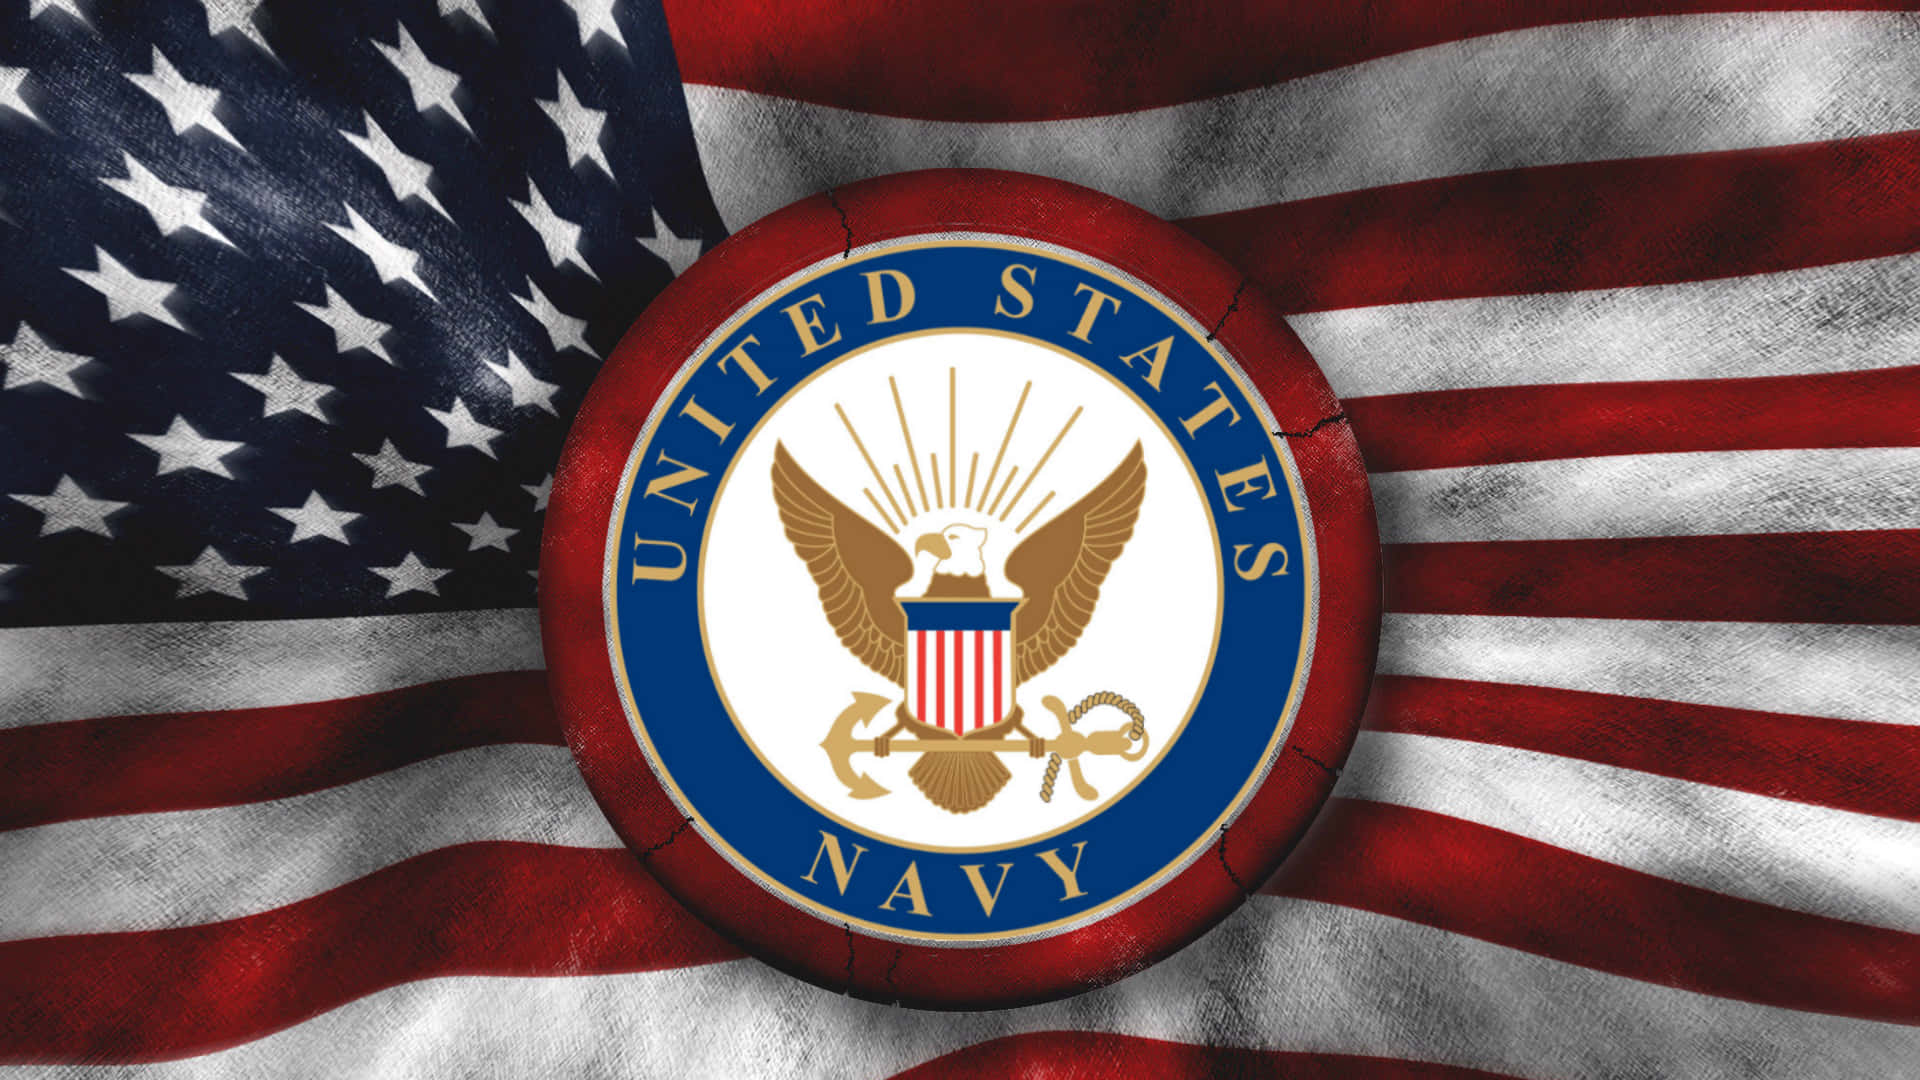 Fürunsere Freiheit Kämpfen - Us Navy